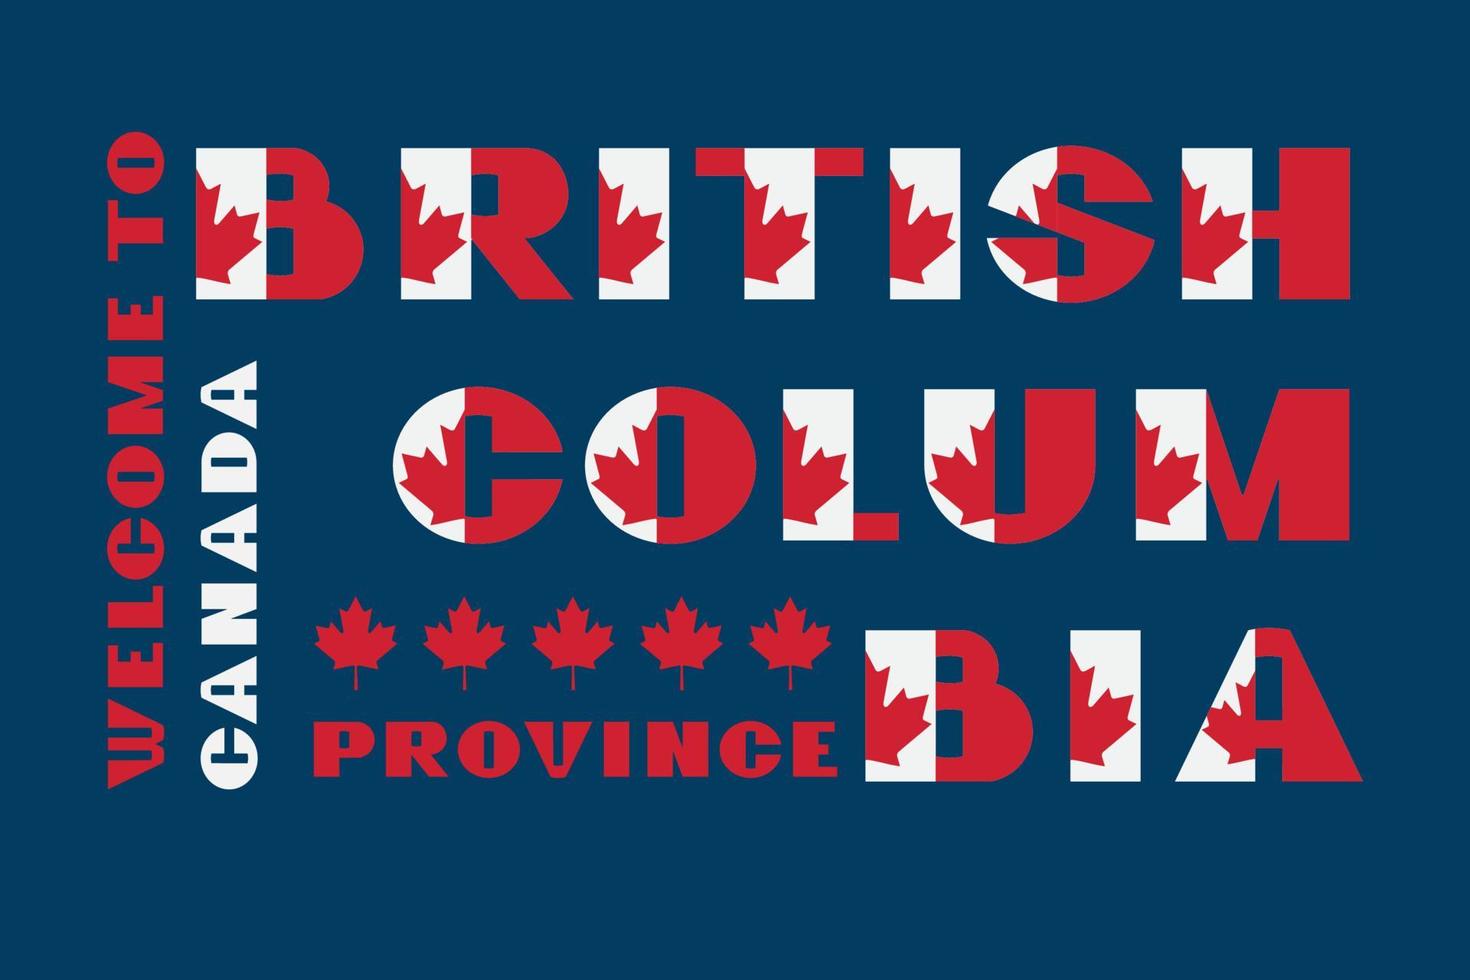 Canada bandiera stile motivazione manifesto con testo benvenuto per Britannico Colombia. moderno tipografia per aziendale viaggio azienda grafico Stampa, fricchettone moda. vettore illustrazione.